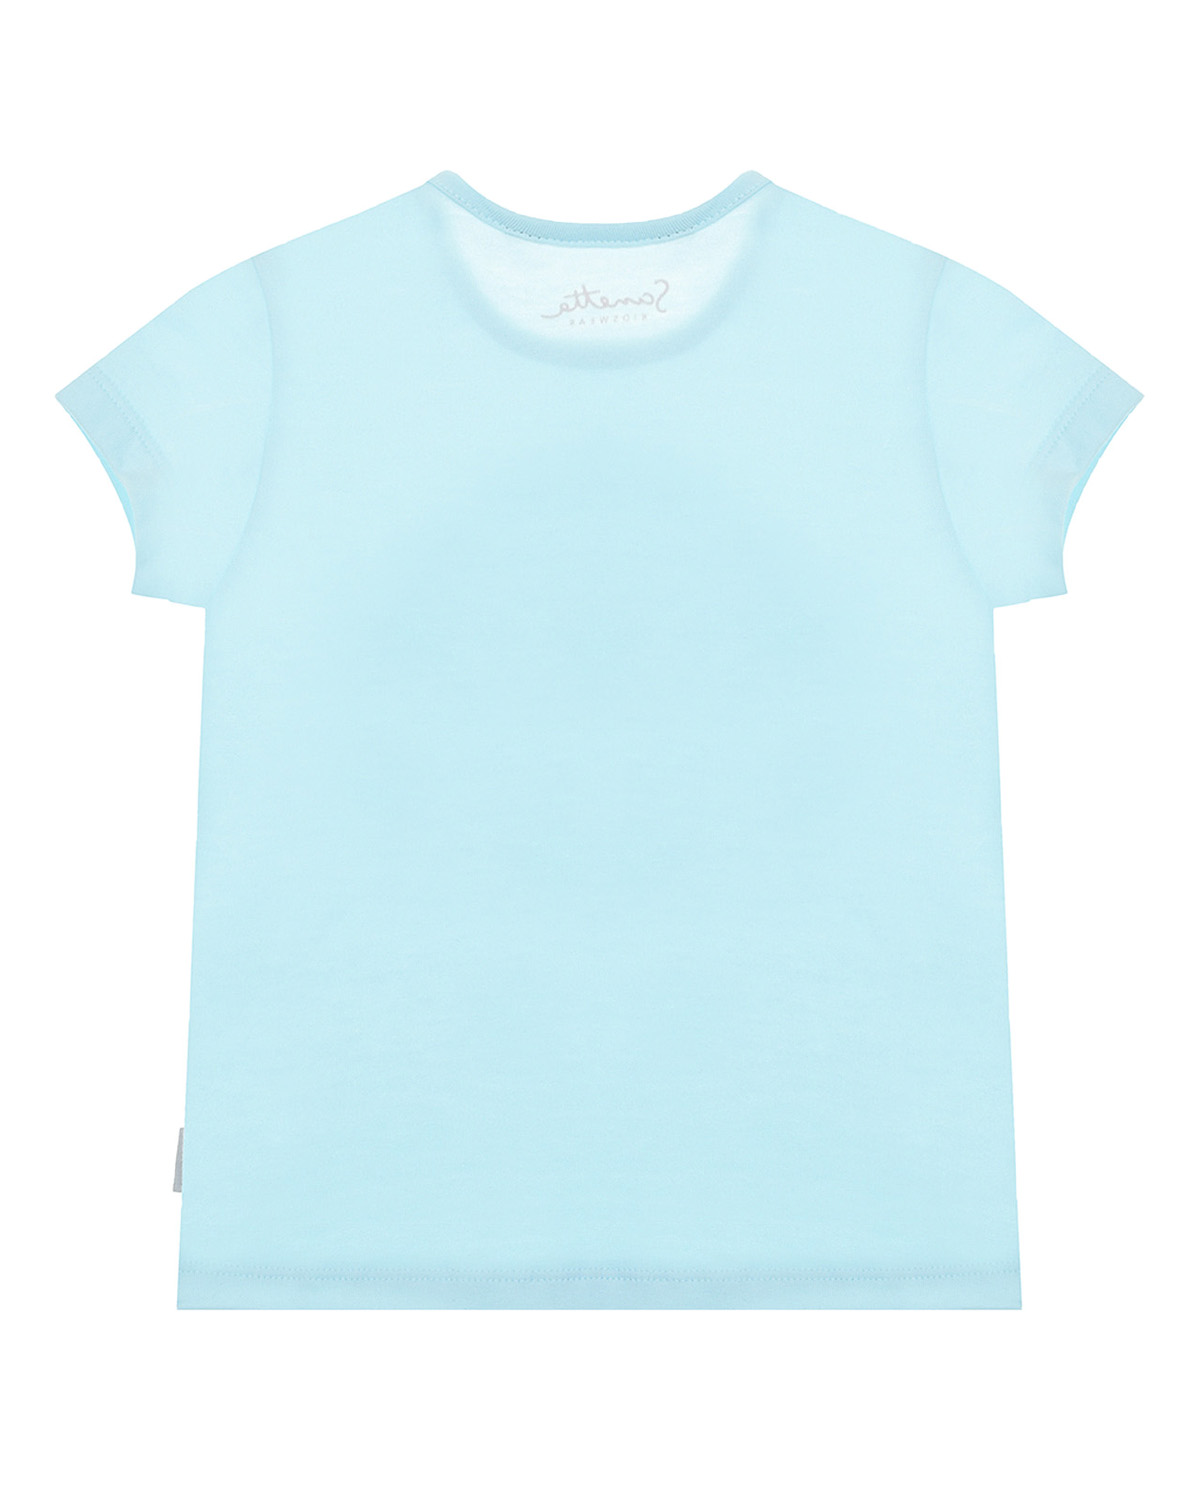 Голубая футболка с принтом "кенгуру" Sanetta Kidswear детская, размер 62, цвет голубой - фото 2